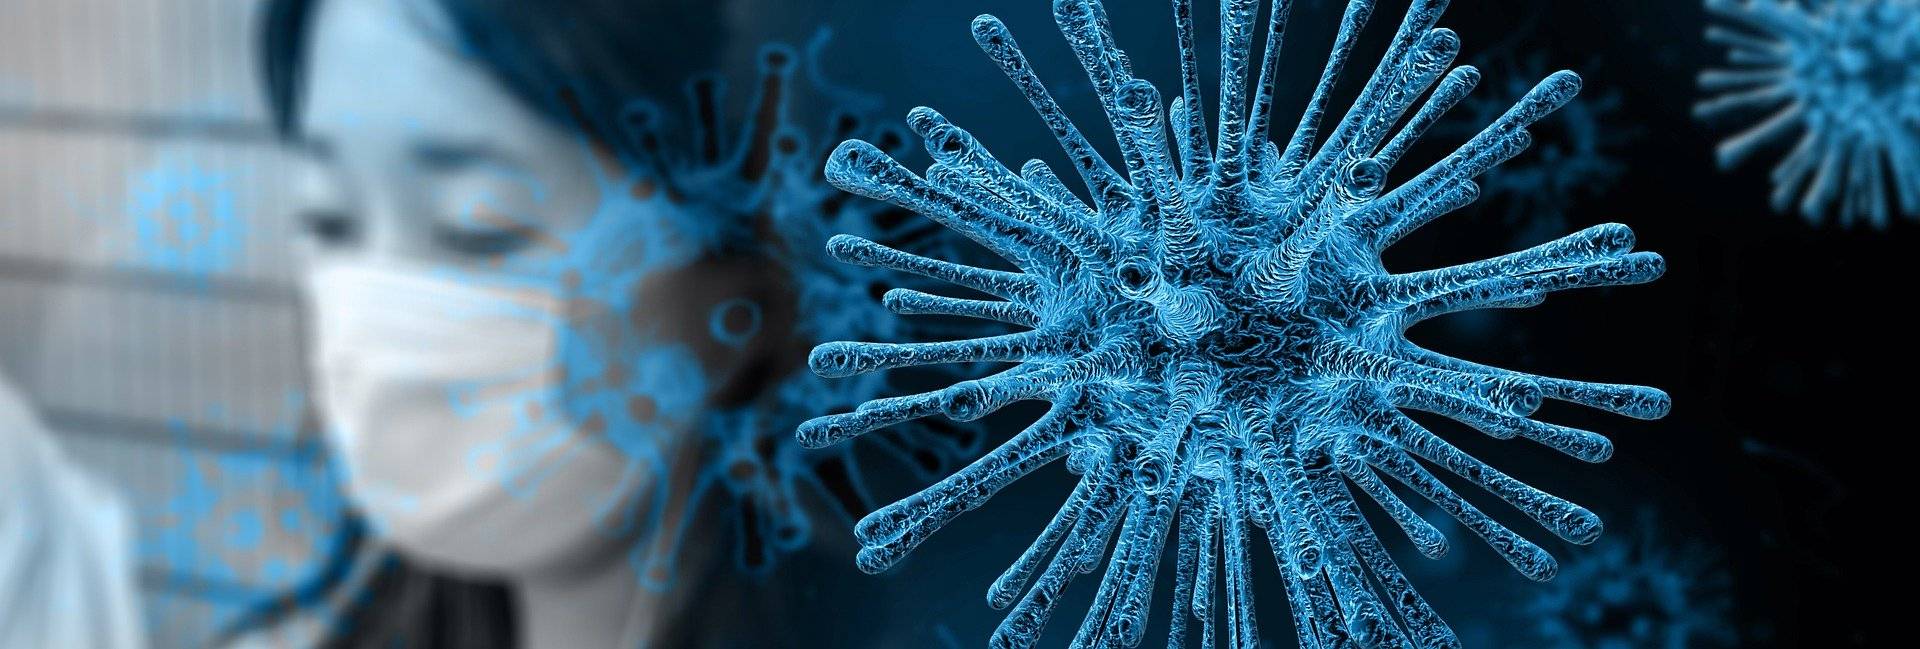 Zwei bestätigte Coronavirus-Fälle in NRW: Wie ist die Lage bei uns?